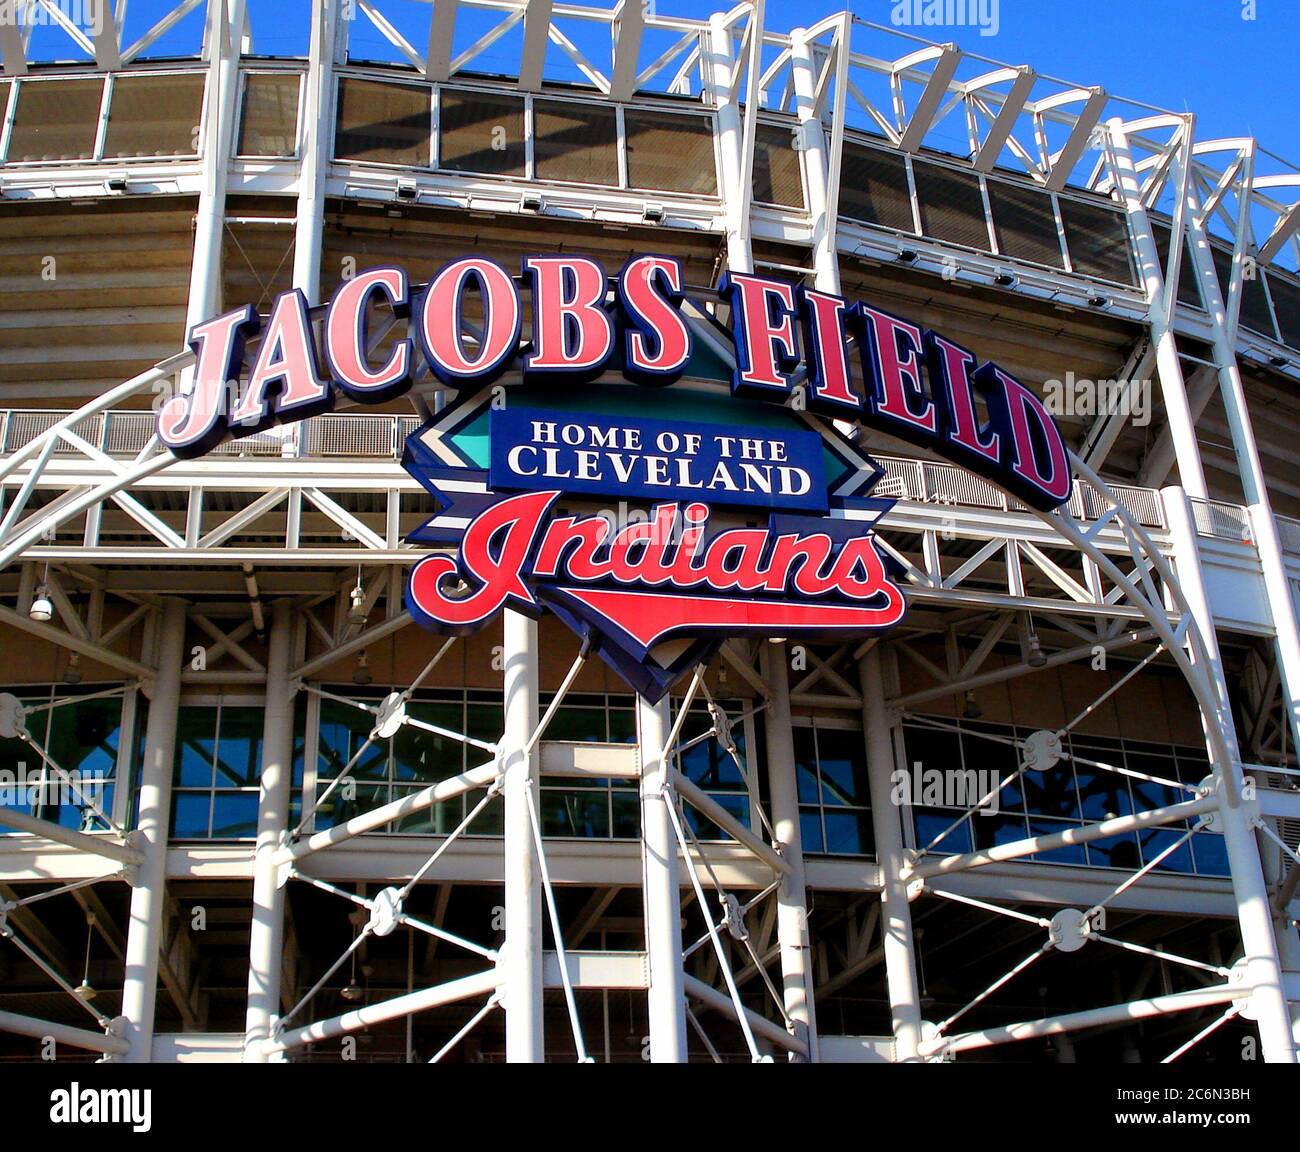 Jacobs Field in Cleveland, OH ca 2007 - Der Eingang zum Jacobs Field ist toped mit einem großen Schild erklärt im Feld das zu Hause der Cleveland Indians. Stockfoto